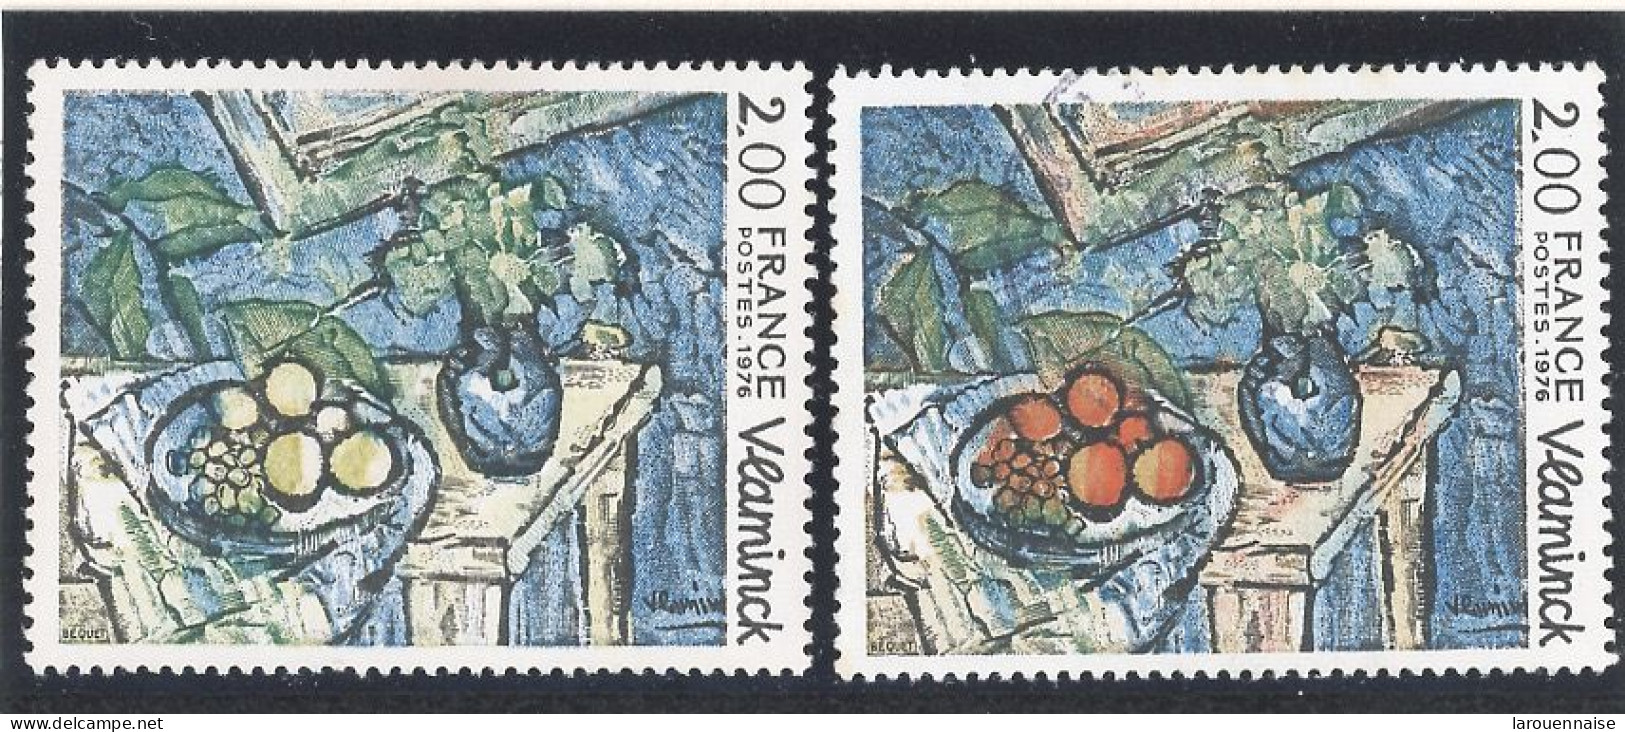 VARIÉTÉ- N°1901 N**- ROUGE ABSENT (Maury 1901a) - Unused Stamps